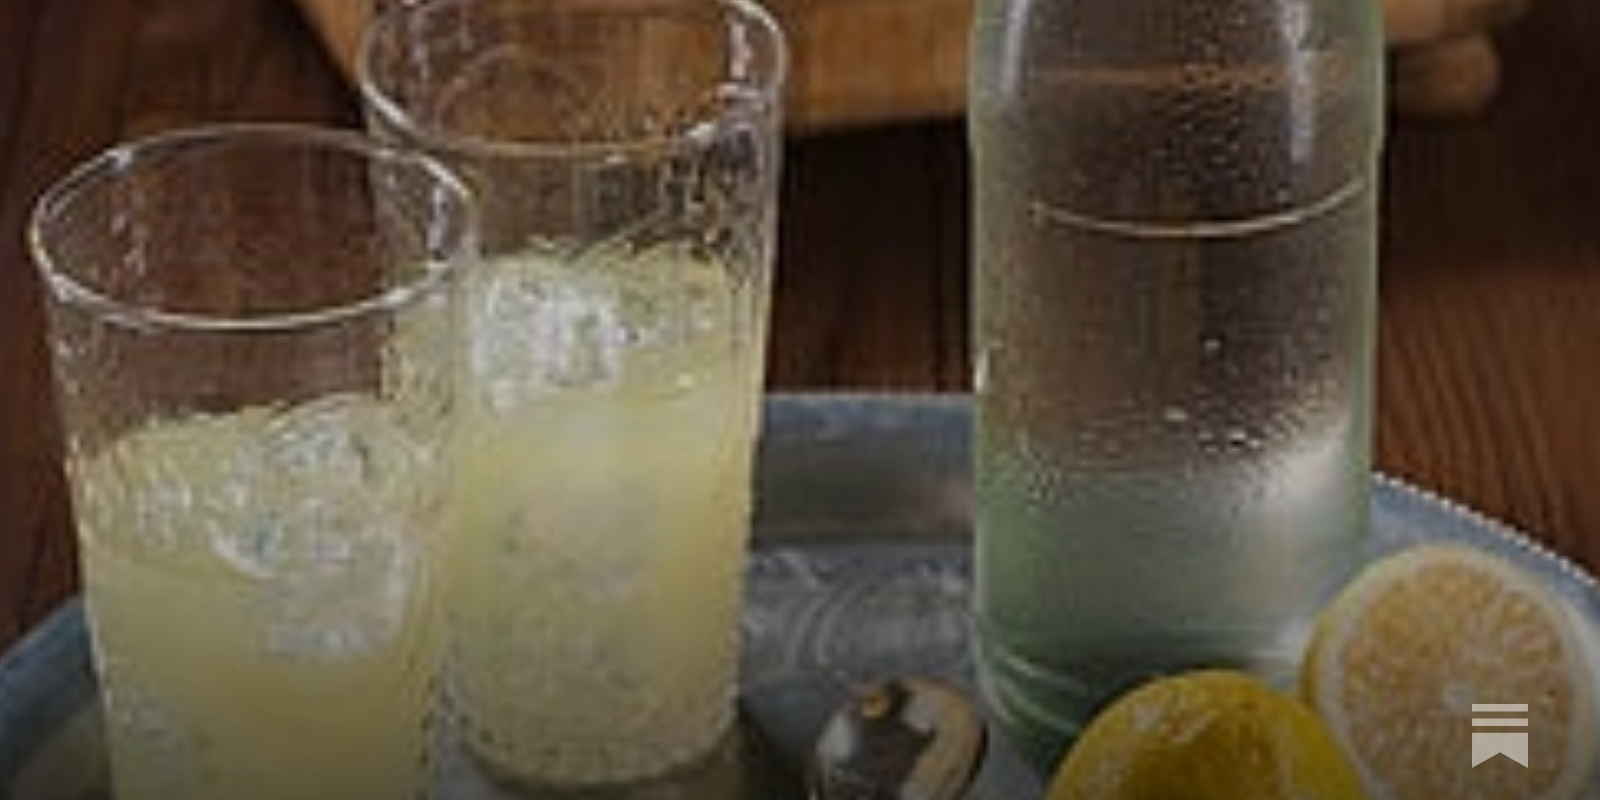 How To Make Citron Pressé - French Lemonade - COOKtheSTORY